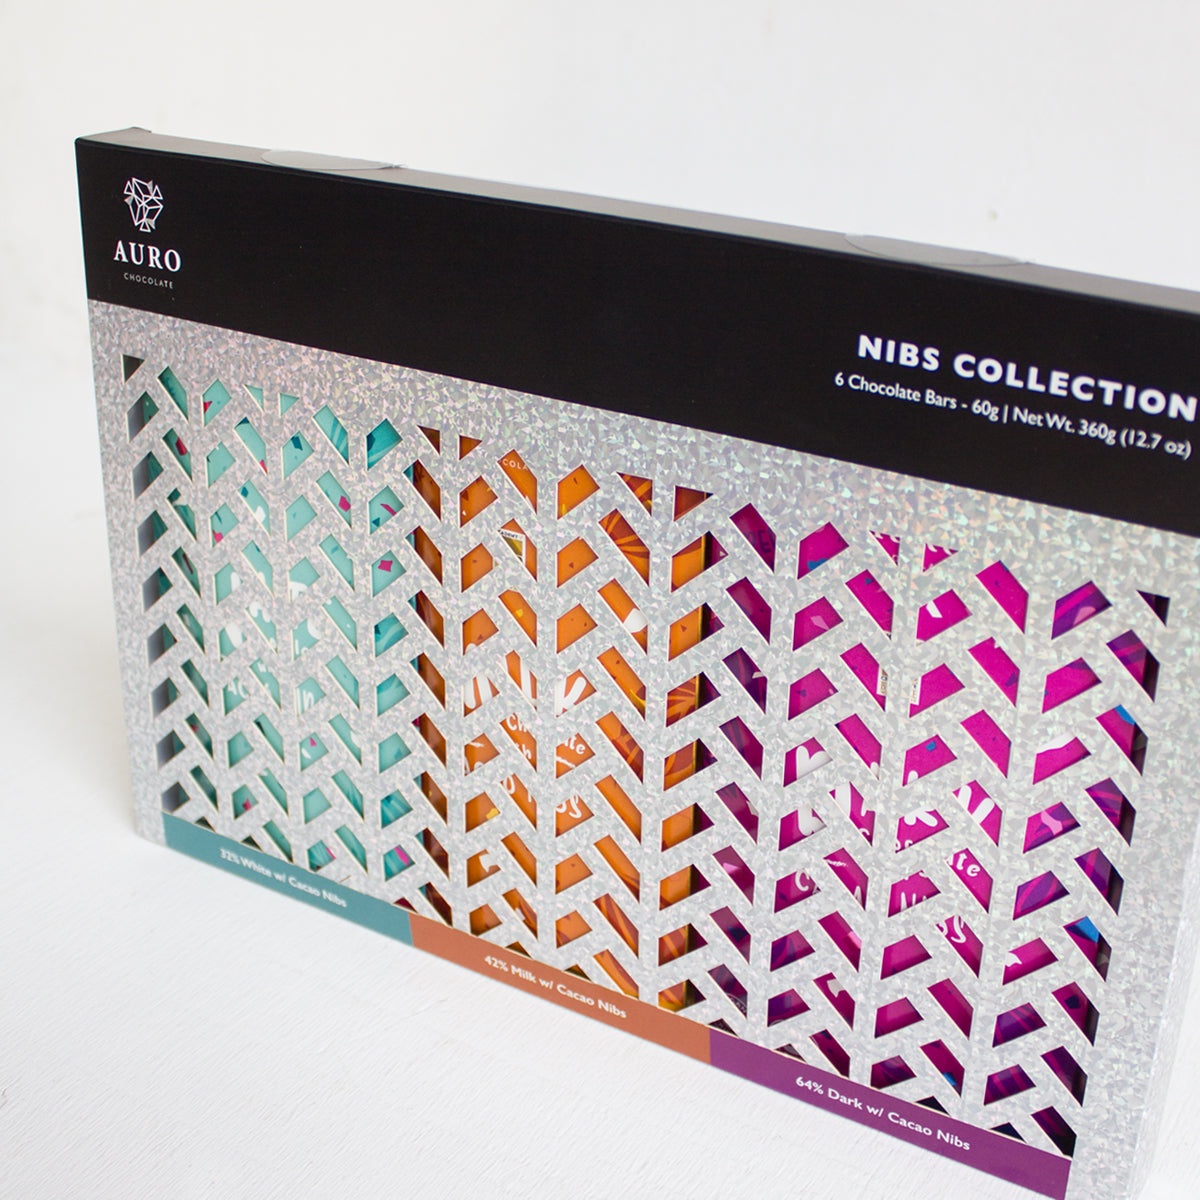 Auro Chocolate - Auro Nibs Collection Box